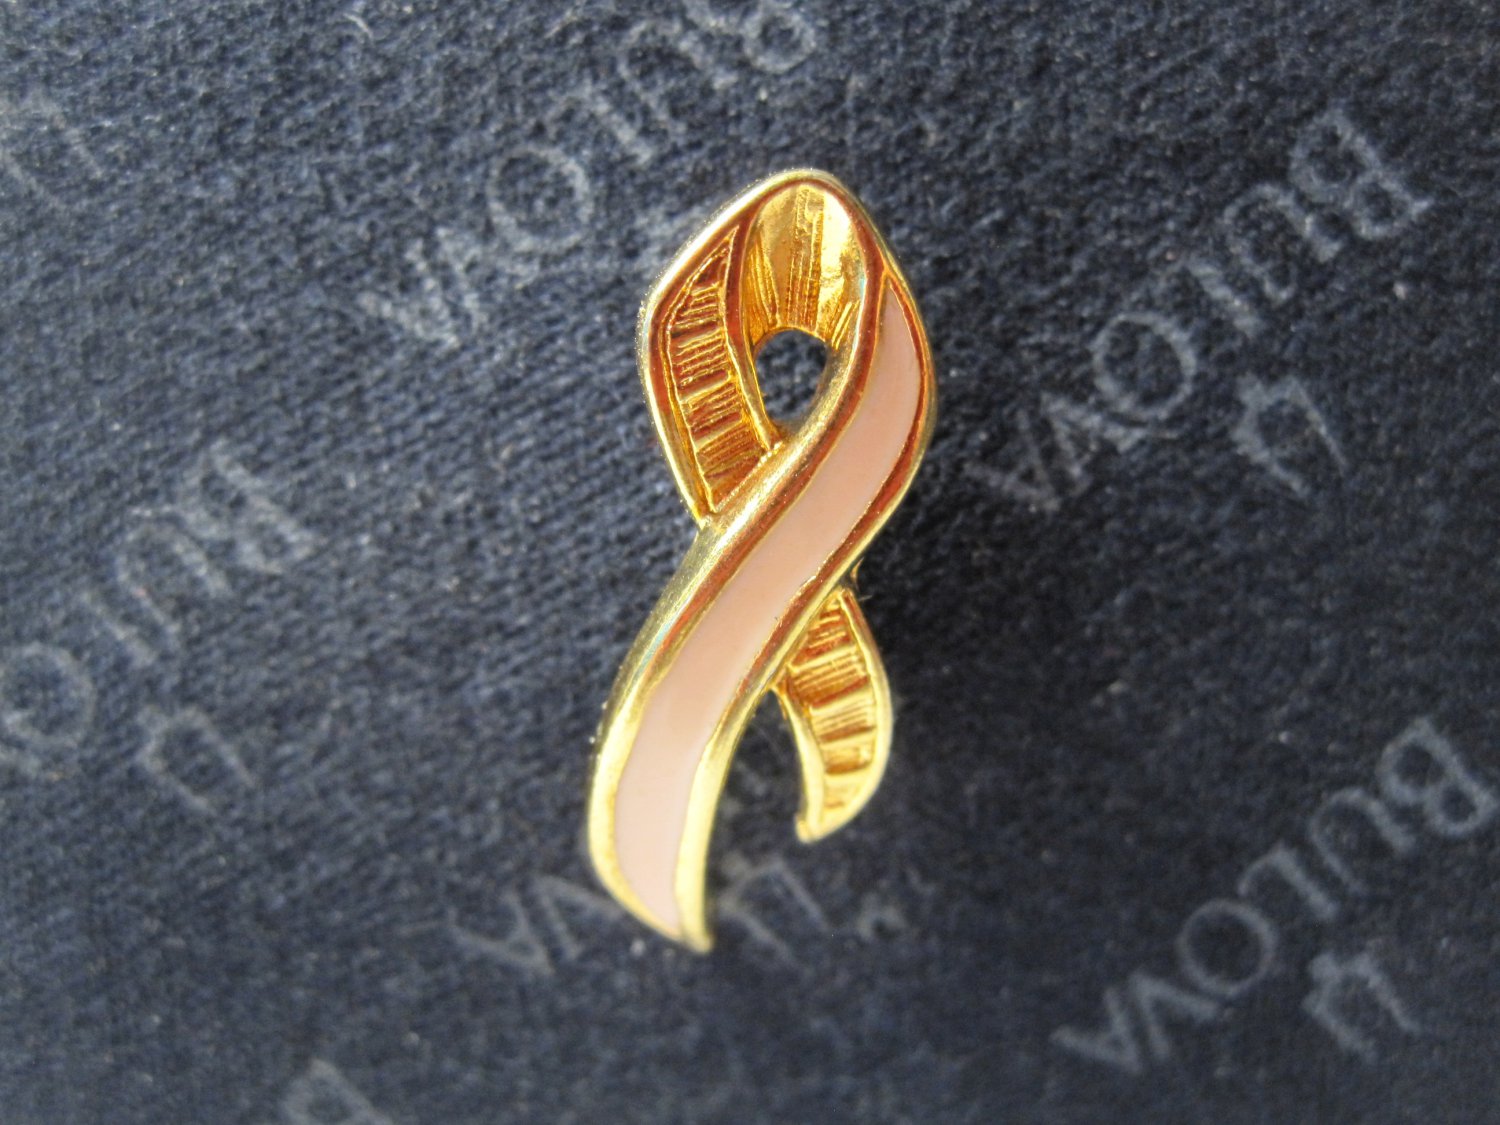 vintage enamel Lapel Pin: Avon Breast Cancer Awareness Pink Ribbon